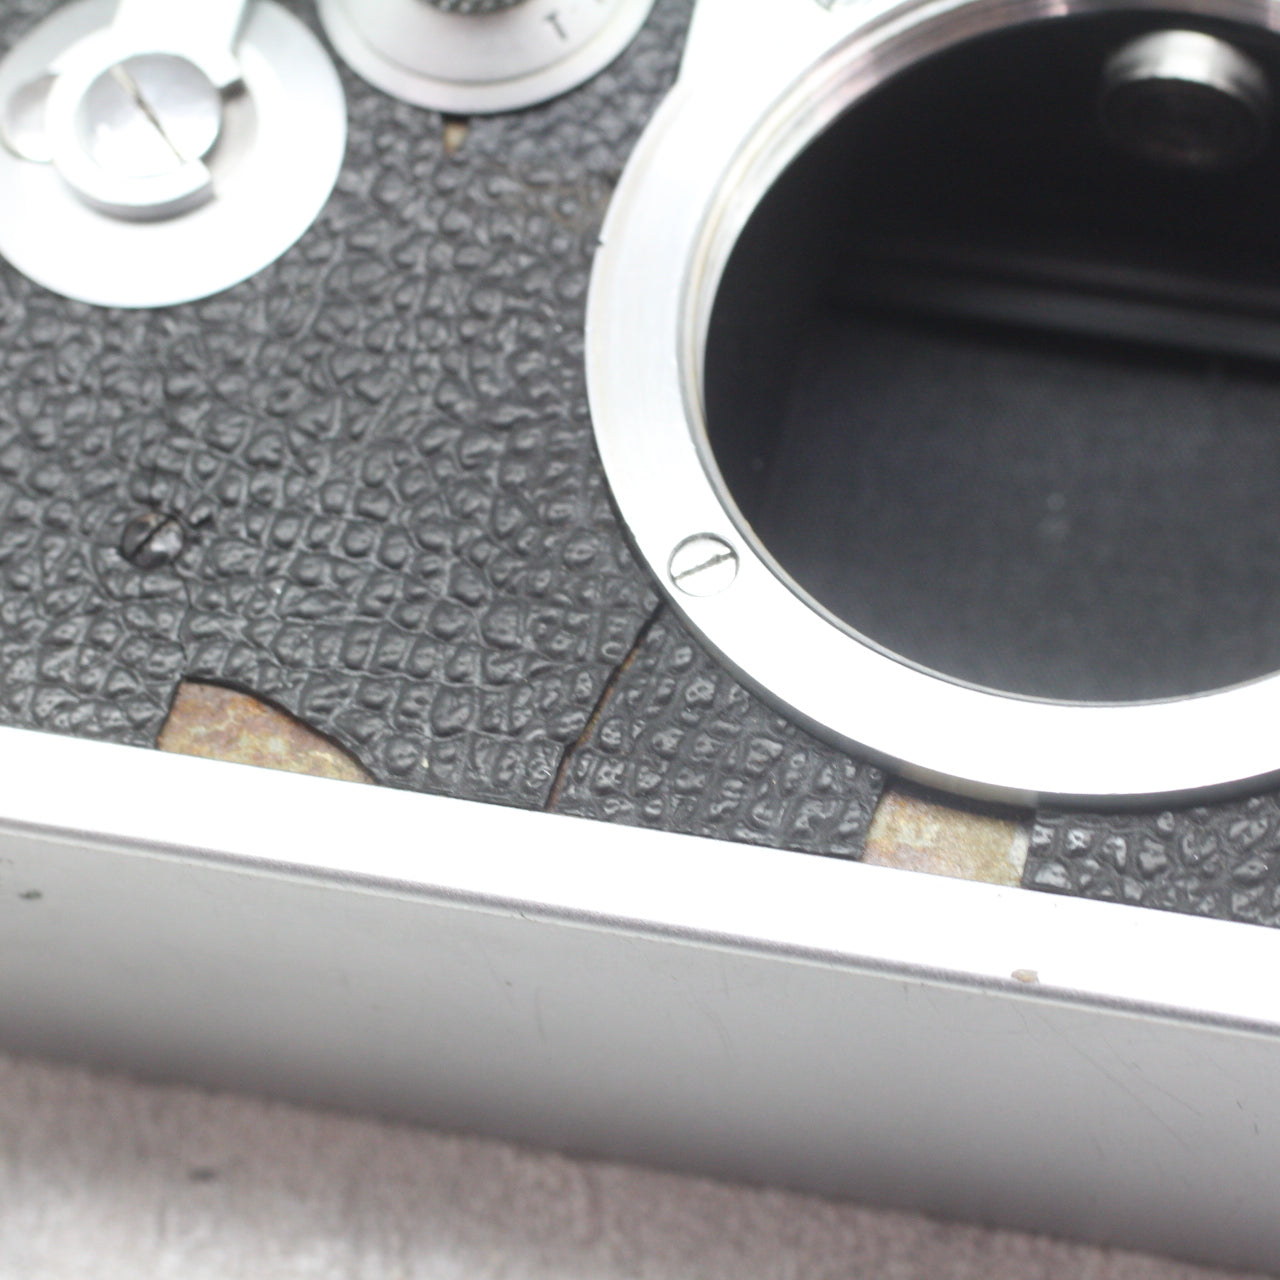 中古品 Leica IIIf ブラックシンクロ セルフタイマーモデル 【9月6日(火)のYouTube生配信でご紹介】